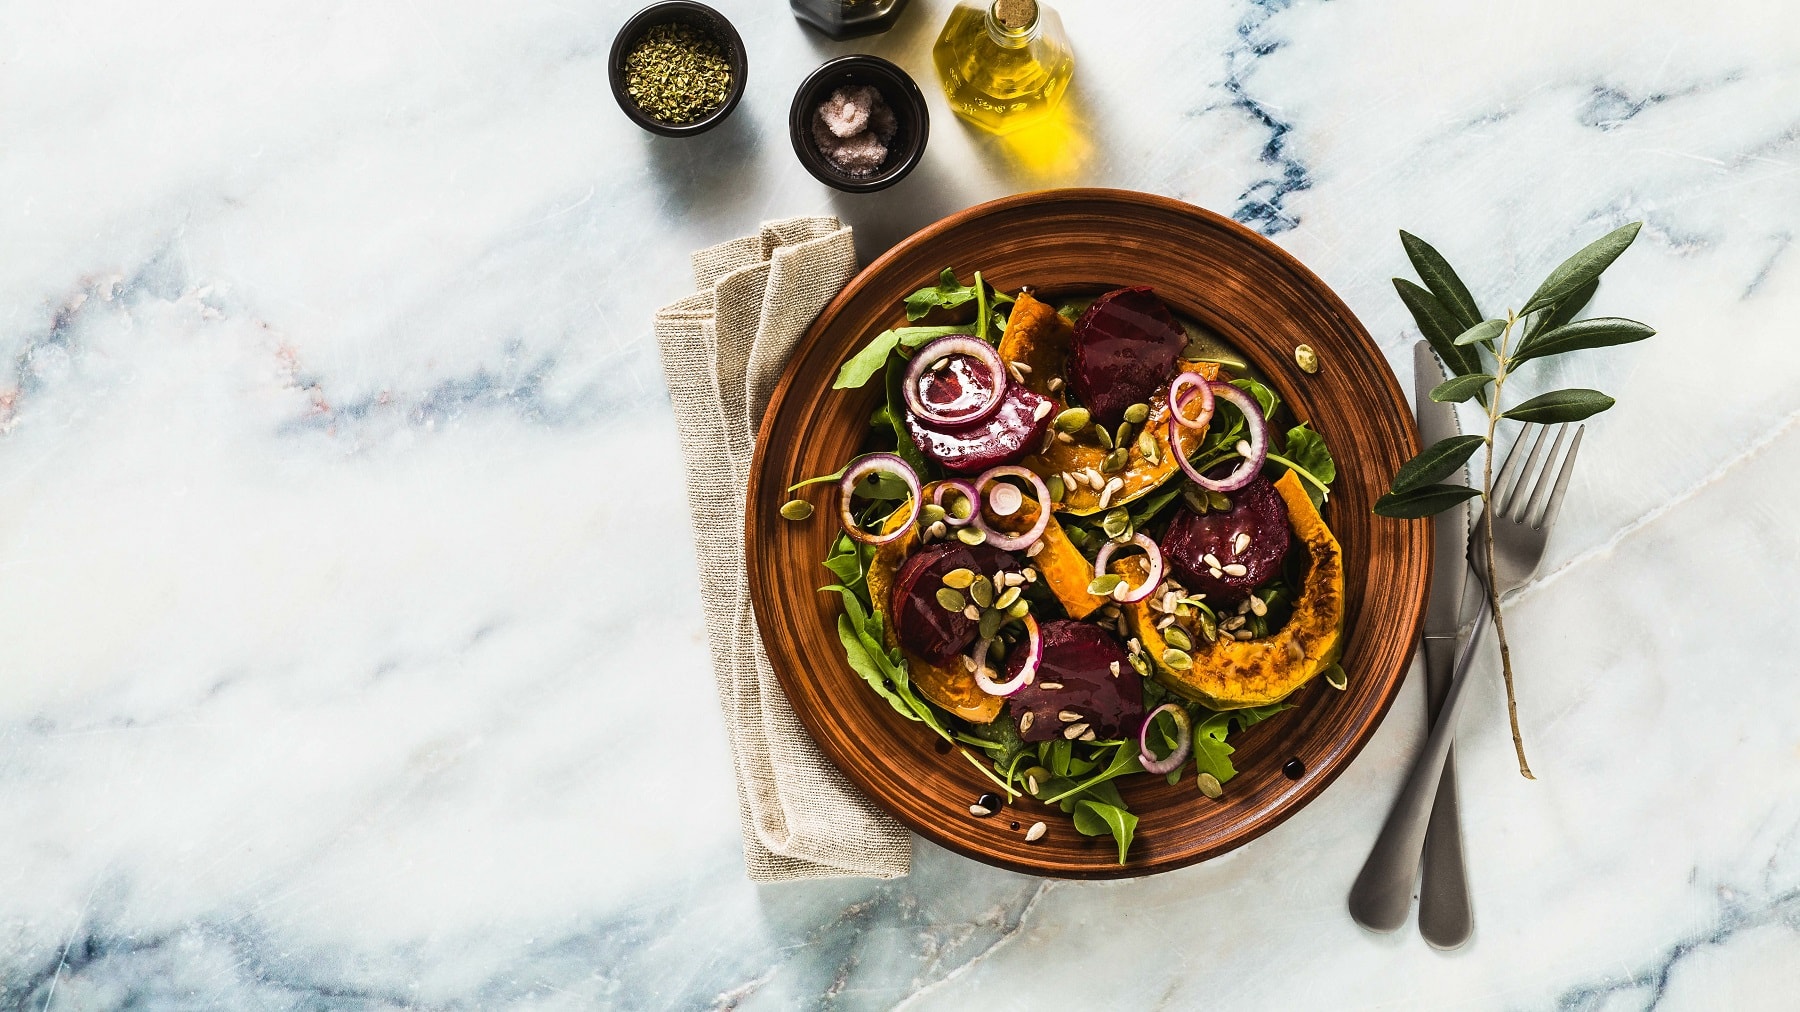 Ein Teller Salat mit Kürbis und Rote Bete aus dem Ofen in der Draufsicht, daneben liegen Messer und Gabel, außerdem eine Serviette und Ölflaschen.